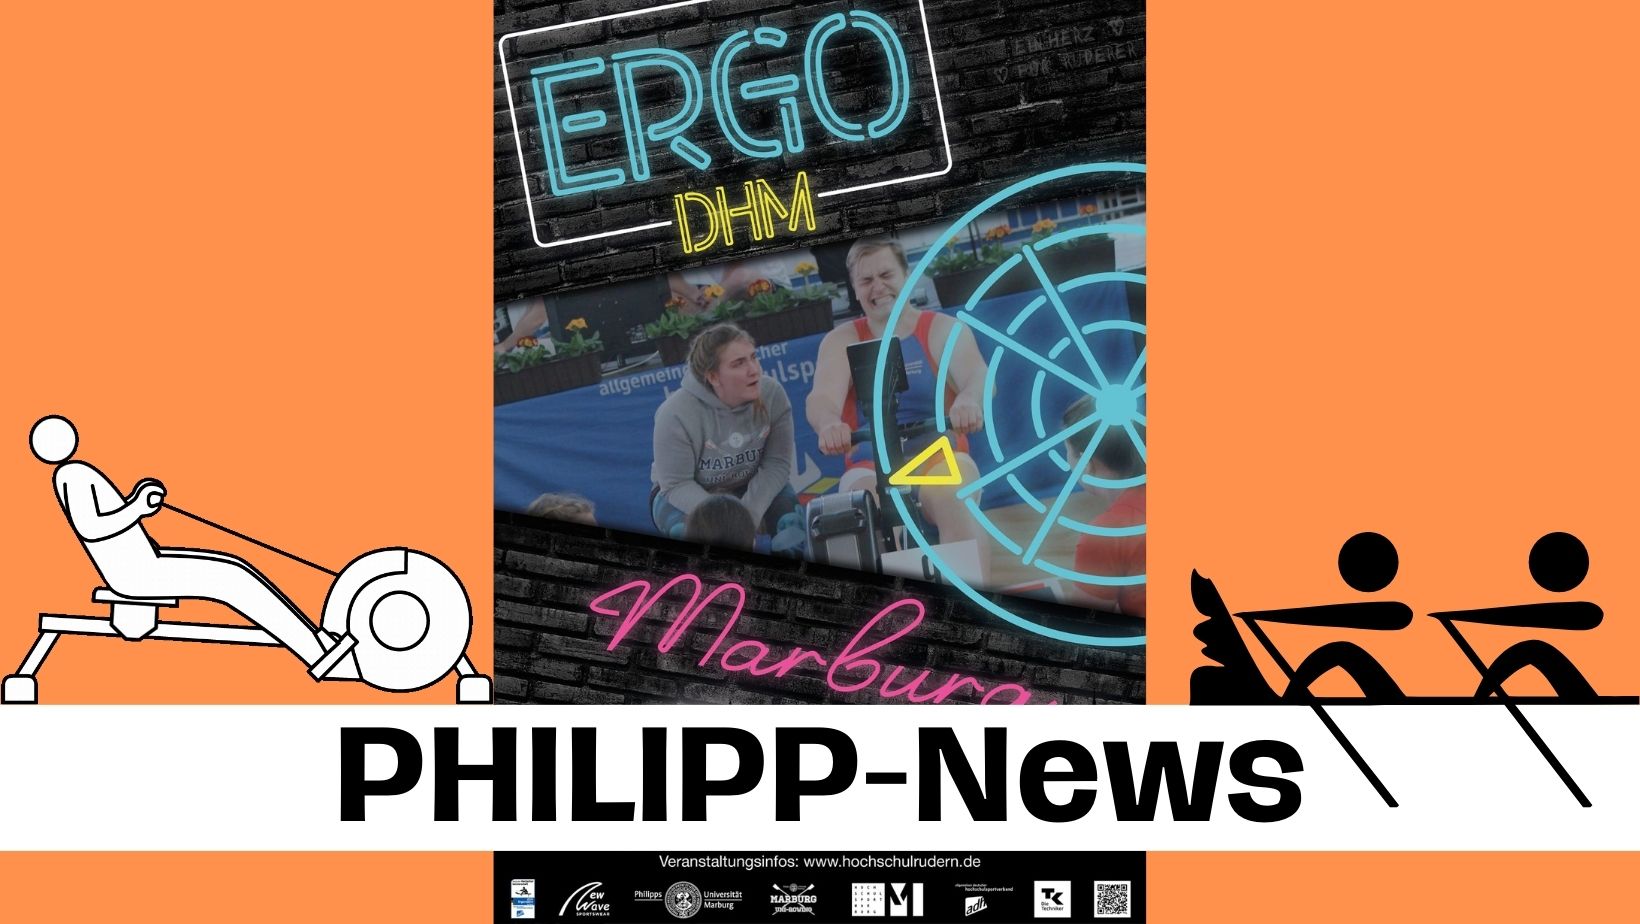 PHILIPP-News: Hochschulmeisterschaft im Ergorudern demnächst in Marburg